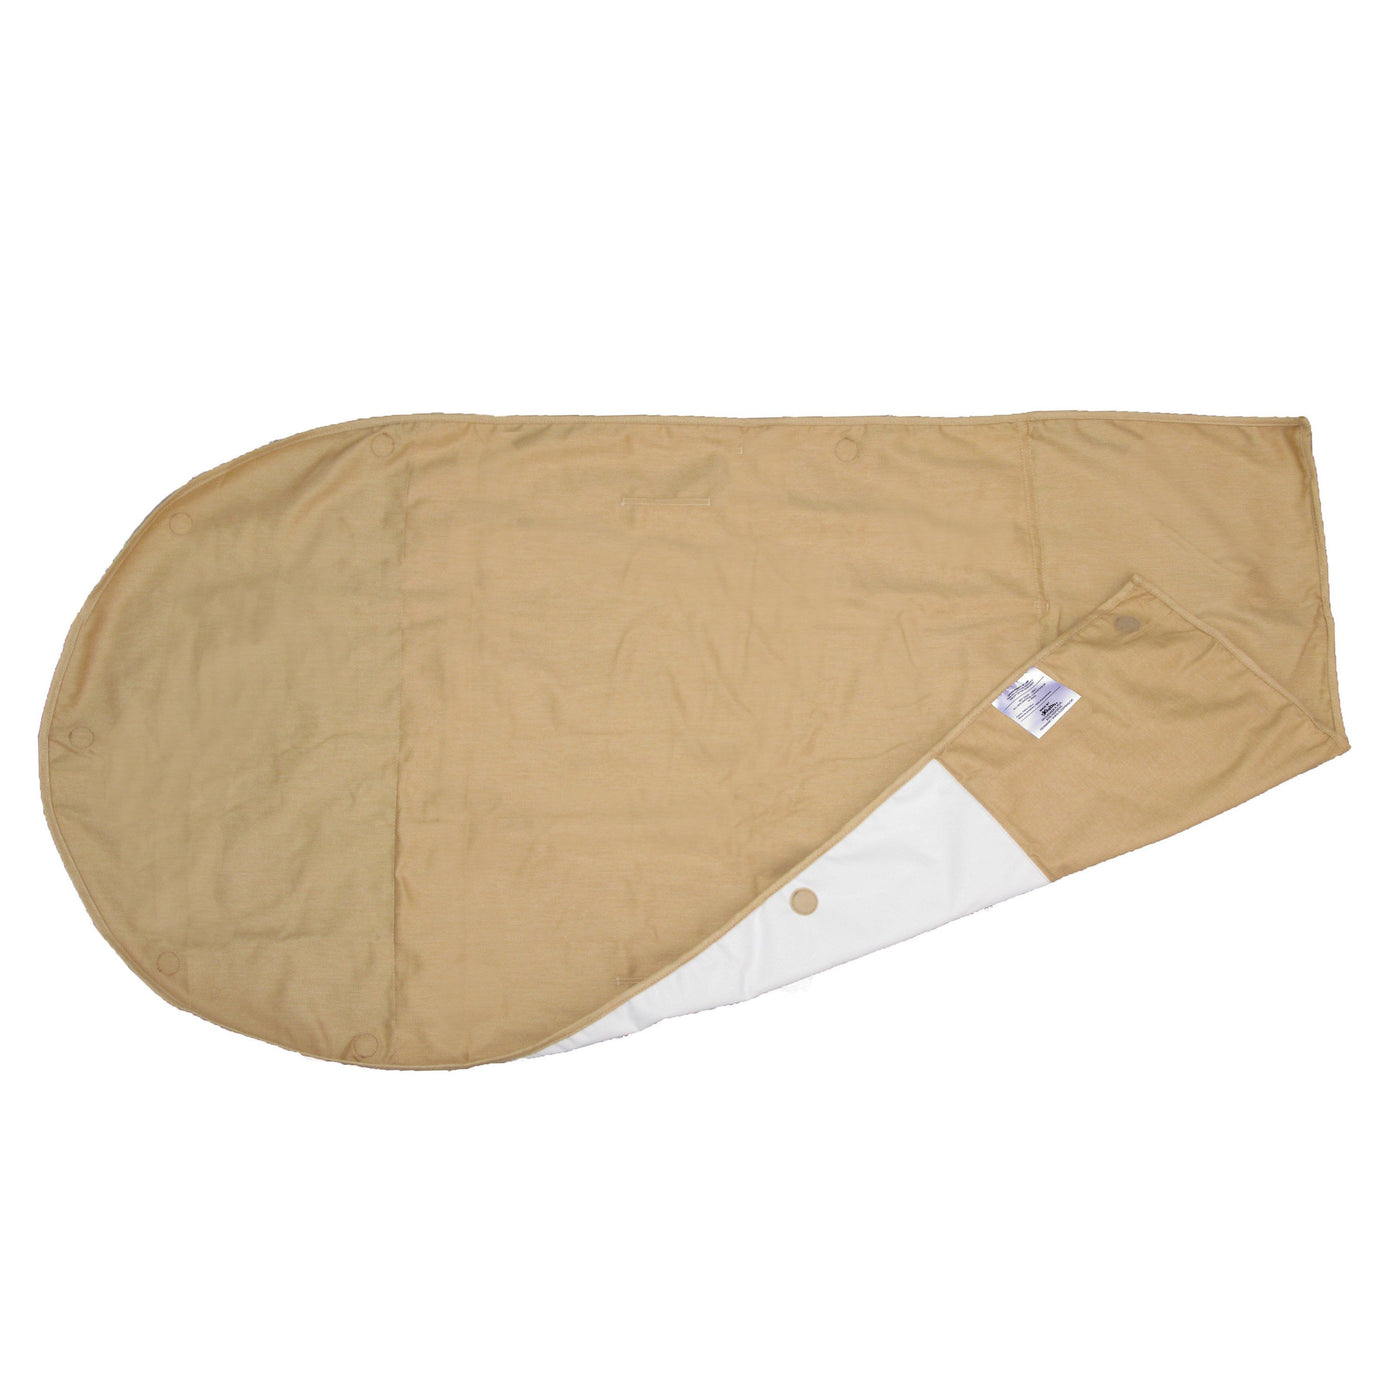 Sleepbag soveposevådliggerlagen 1 stk. mini